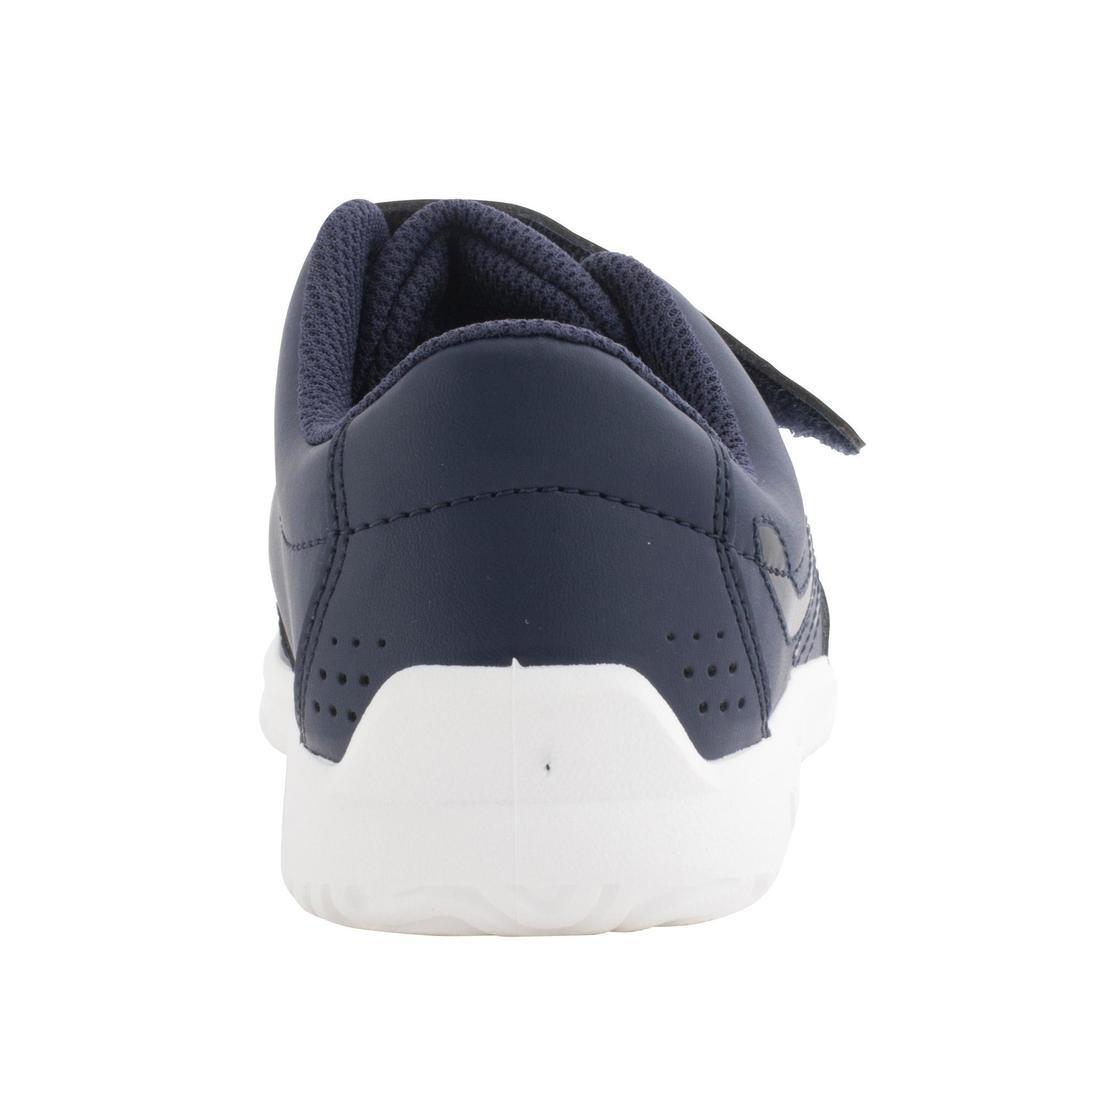 DECATHLON - Ts100 GripKids Tennis Shoes, Navy Blue